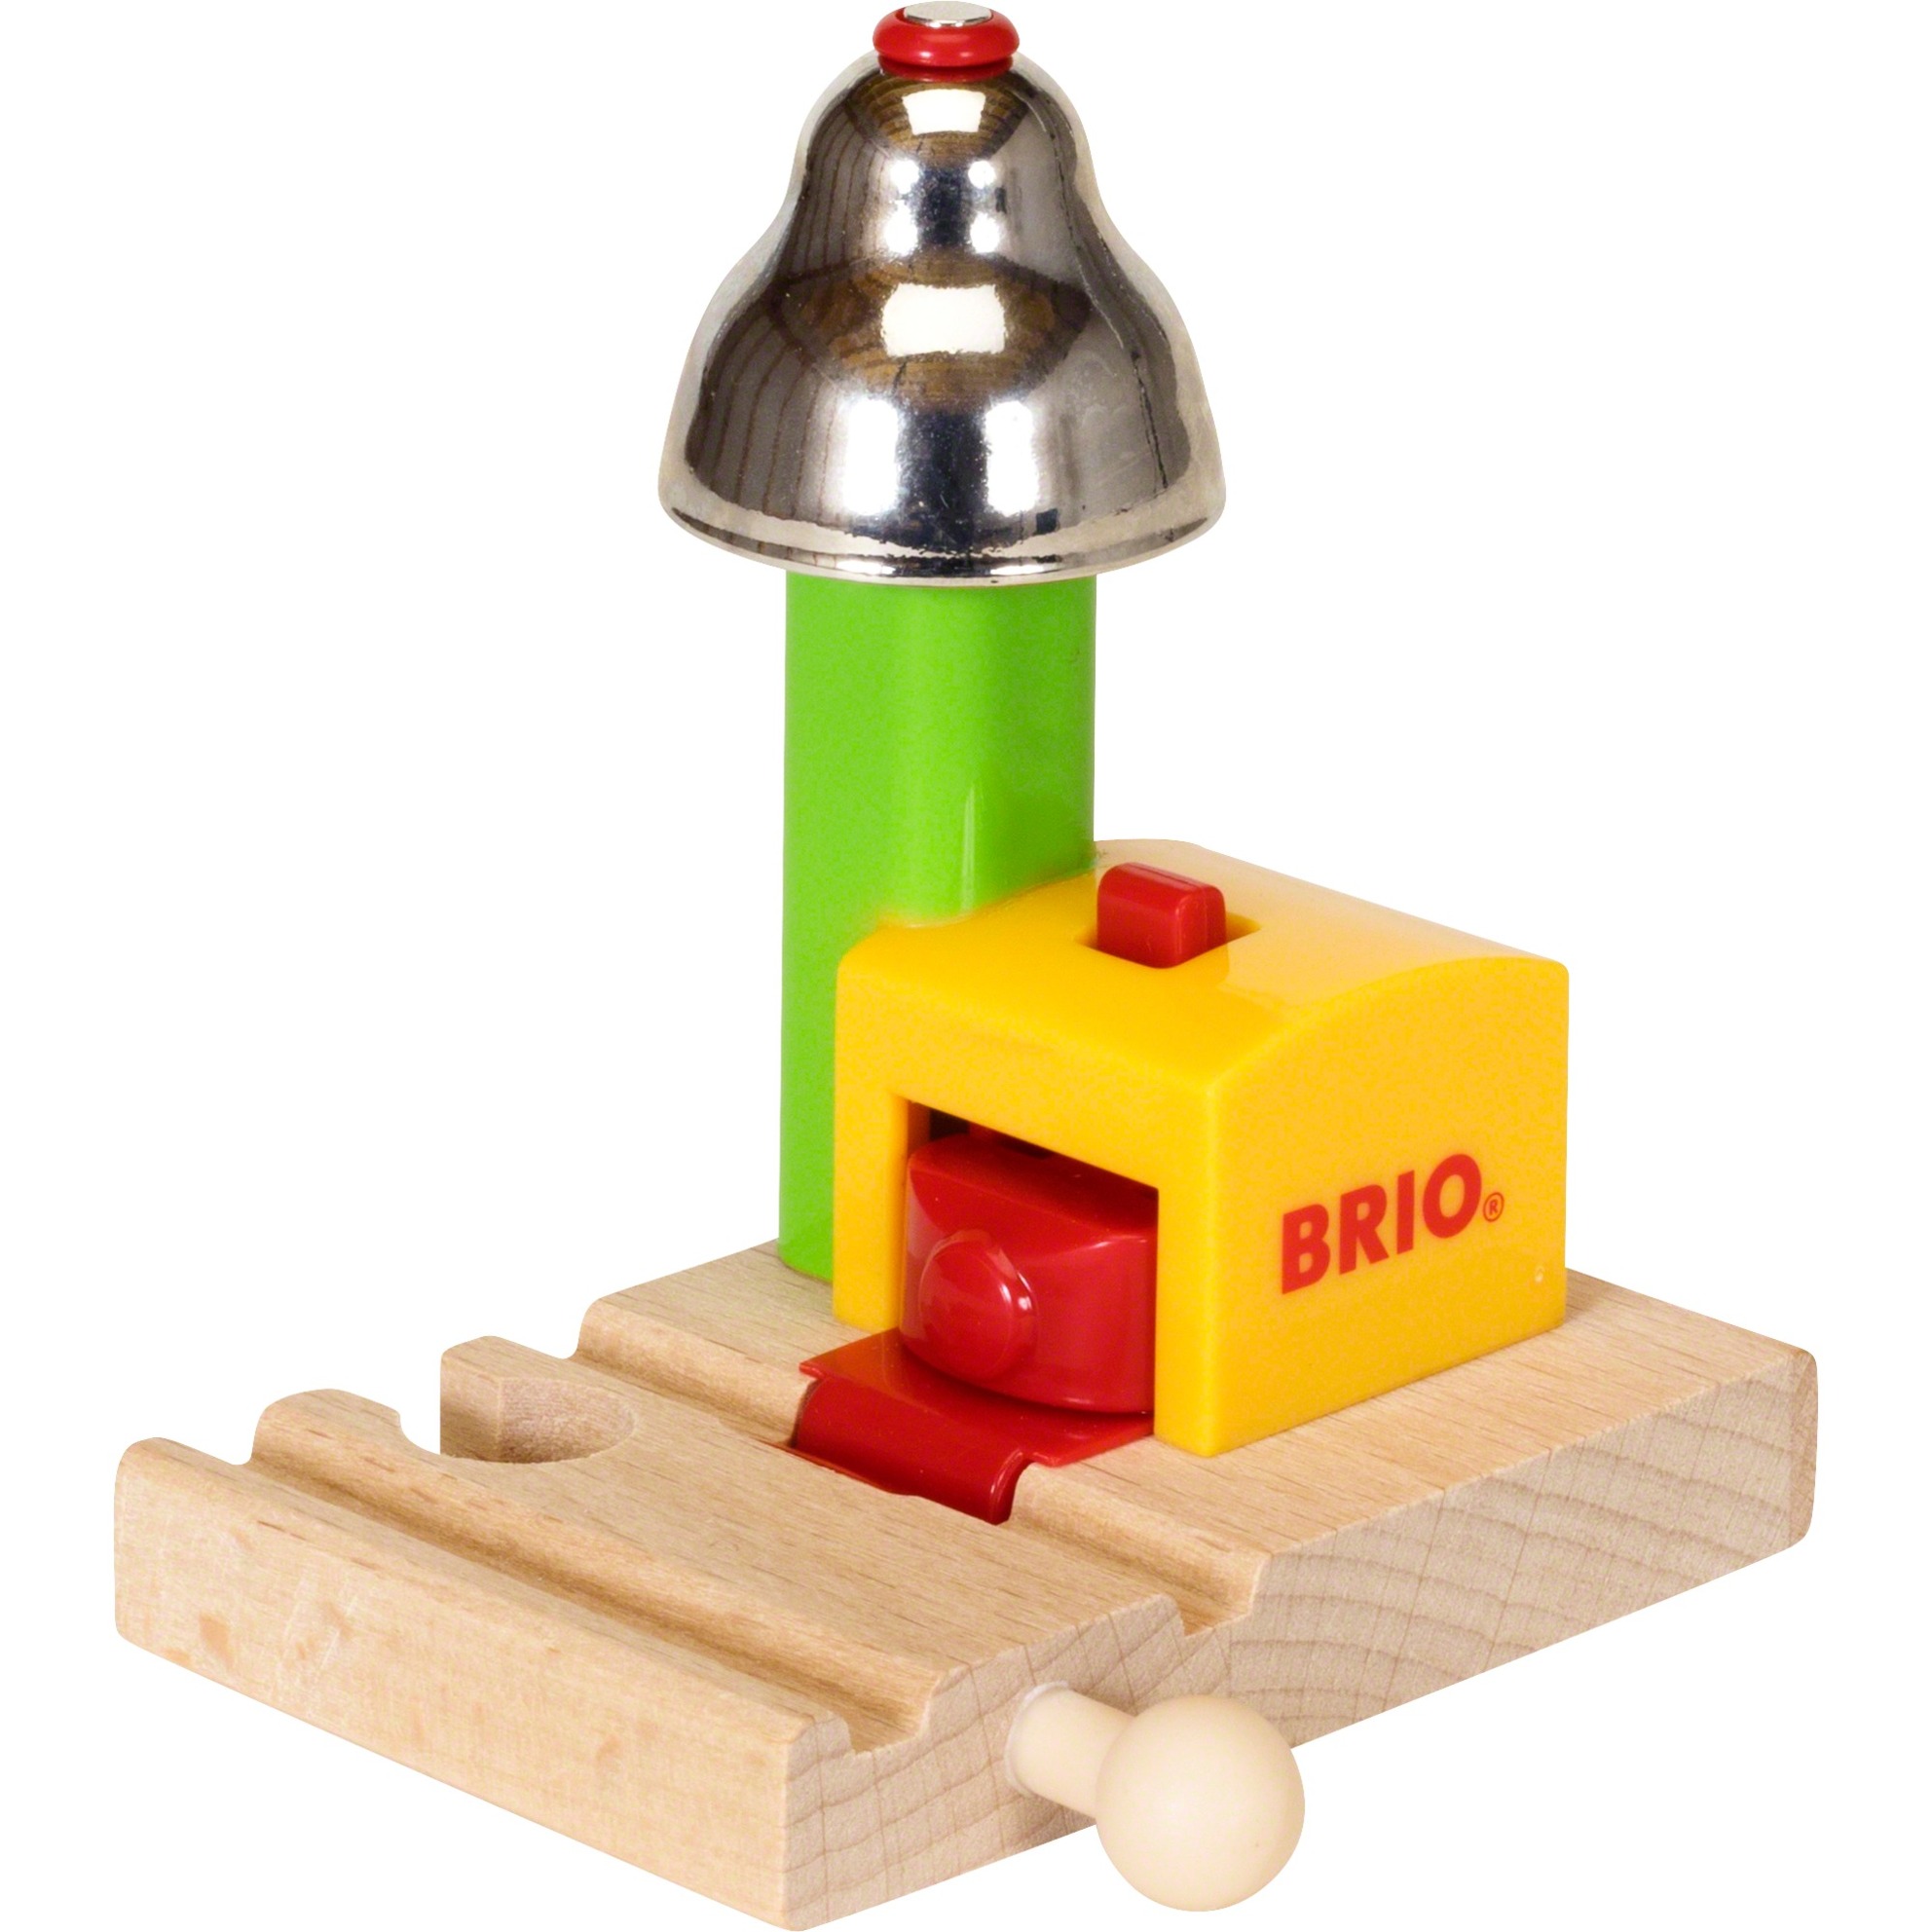 Image of Alternate - Mein erstes BRIO Glockensignal, Bahn online einkaufen bei Alternate